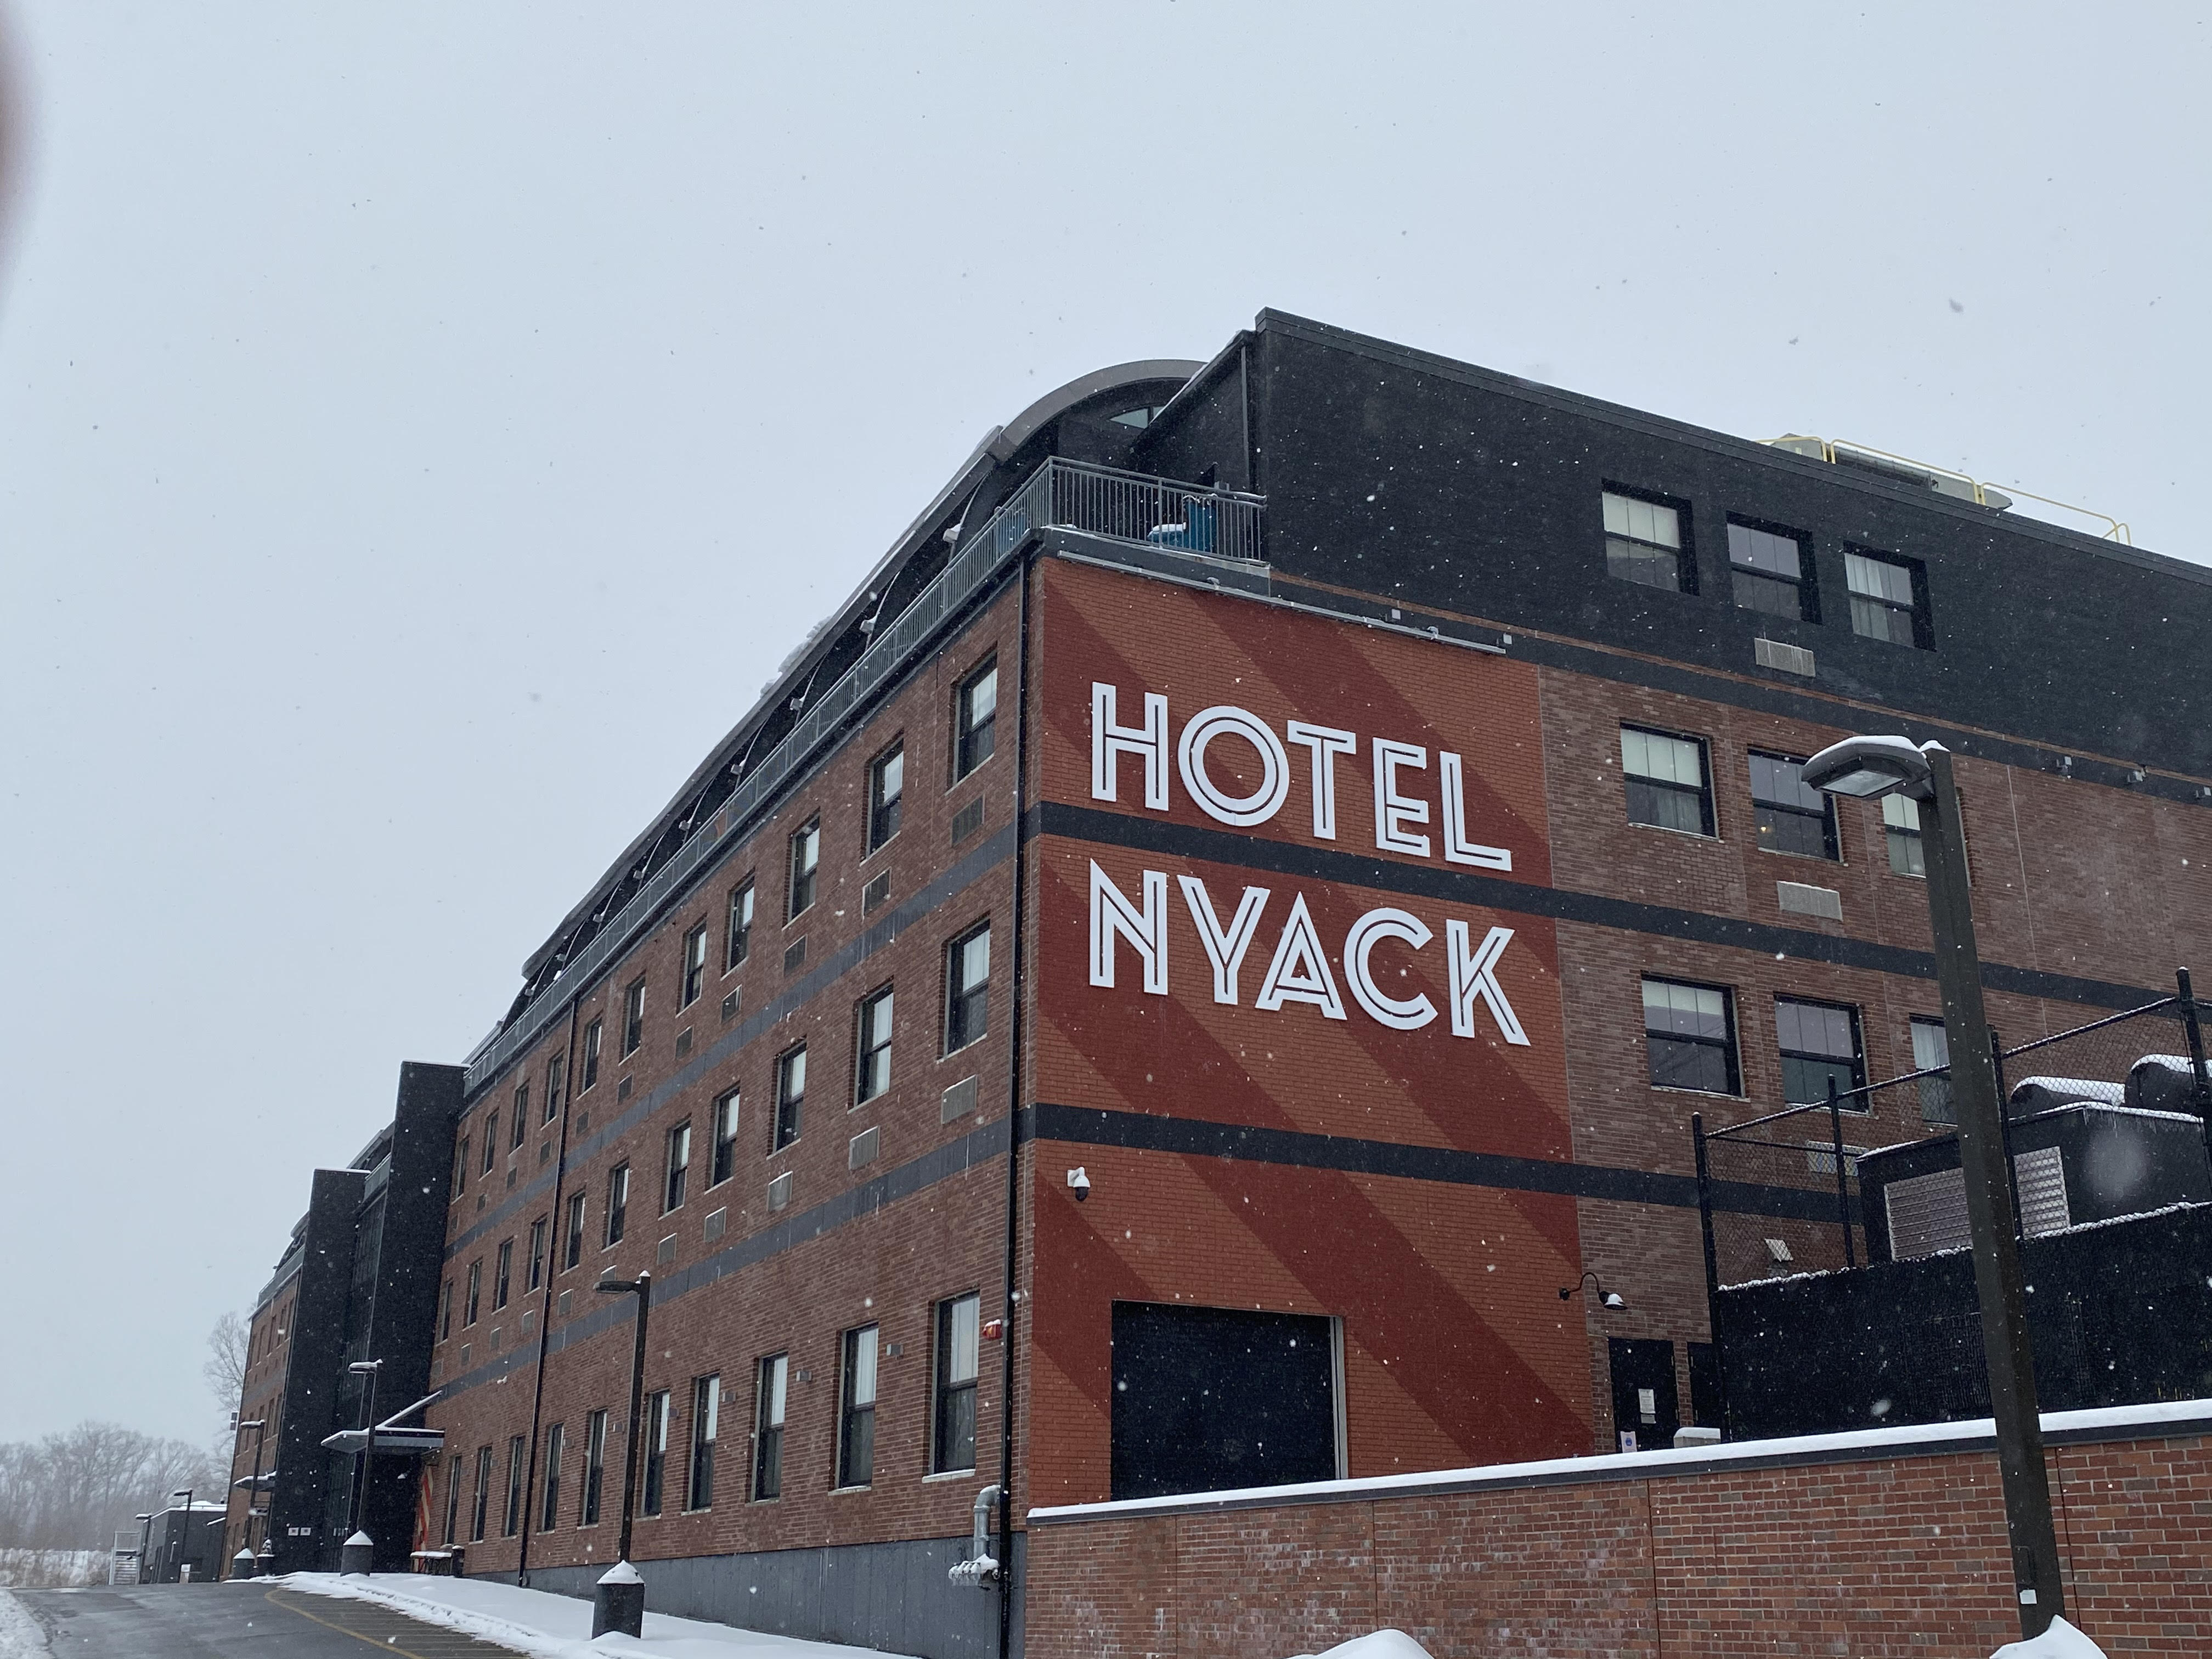 Hotel Nyack